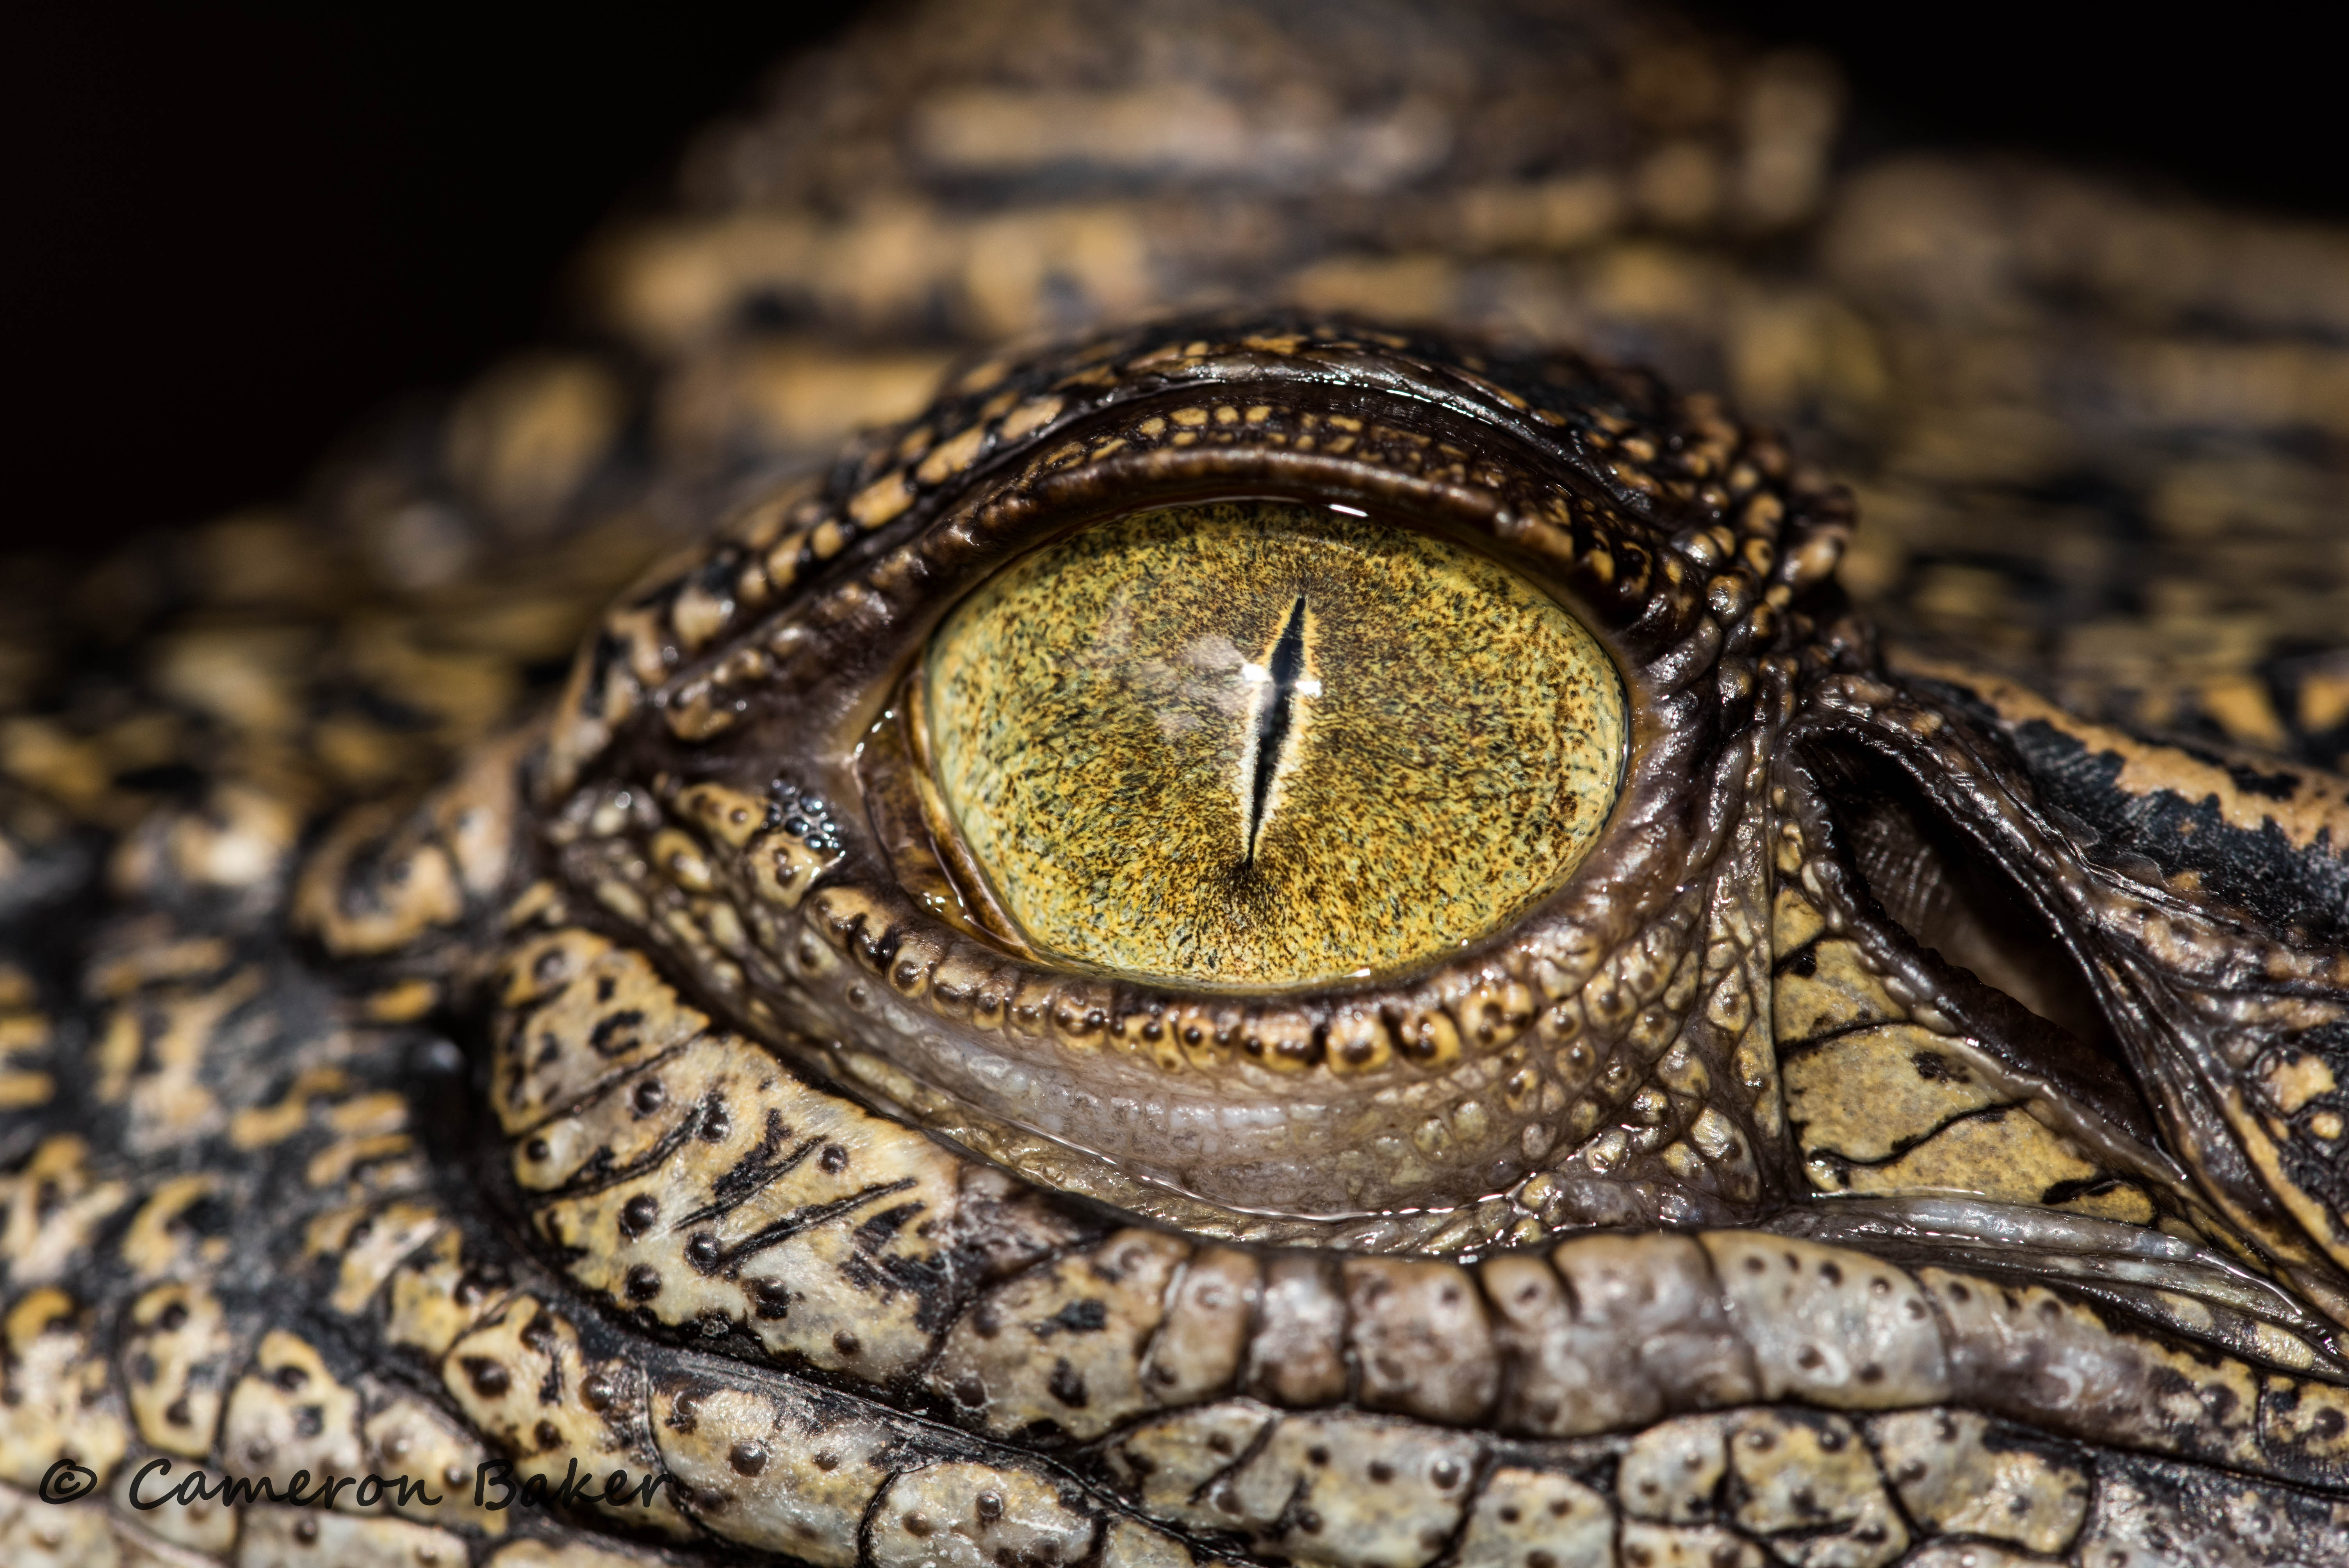 Eye spy a crocodile eye - Imgur